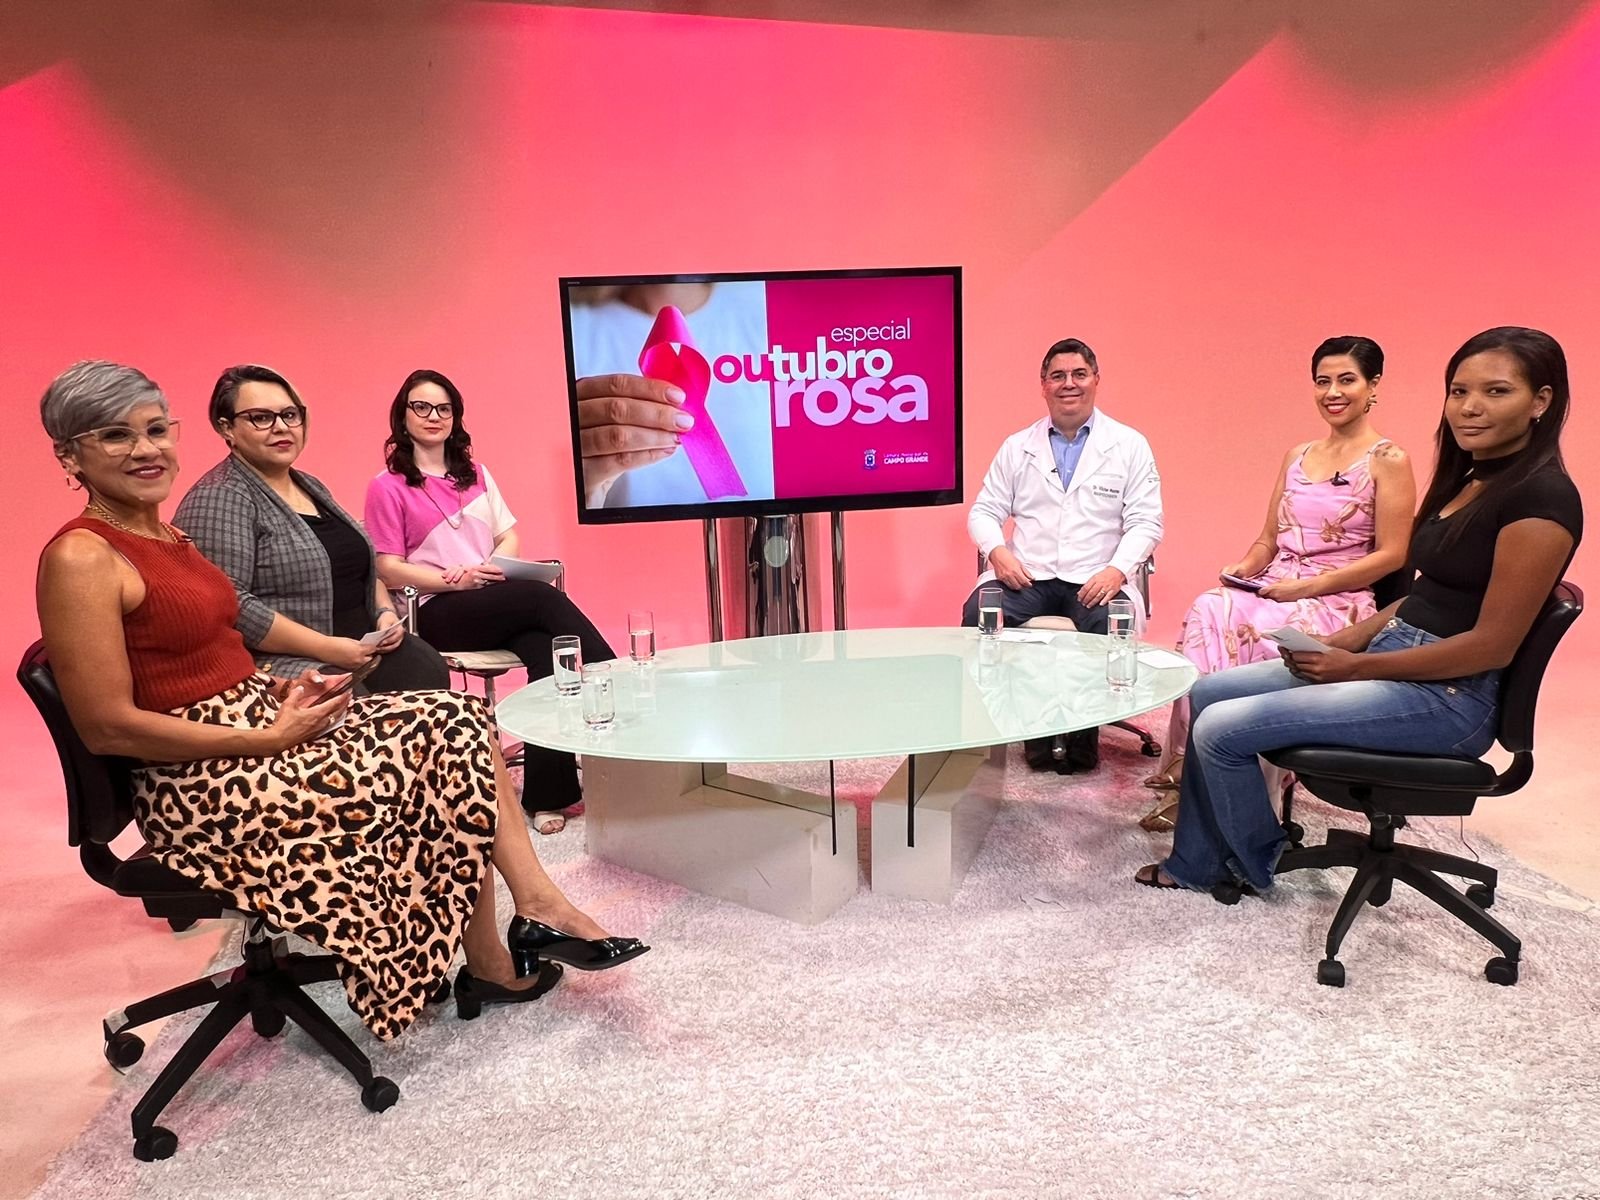 Câncer de Mama: TV Câmara apresenta Especial Outubro Rosa